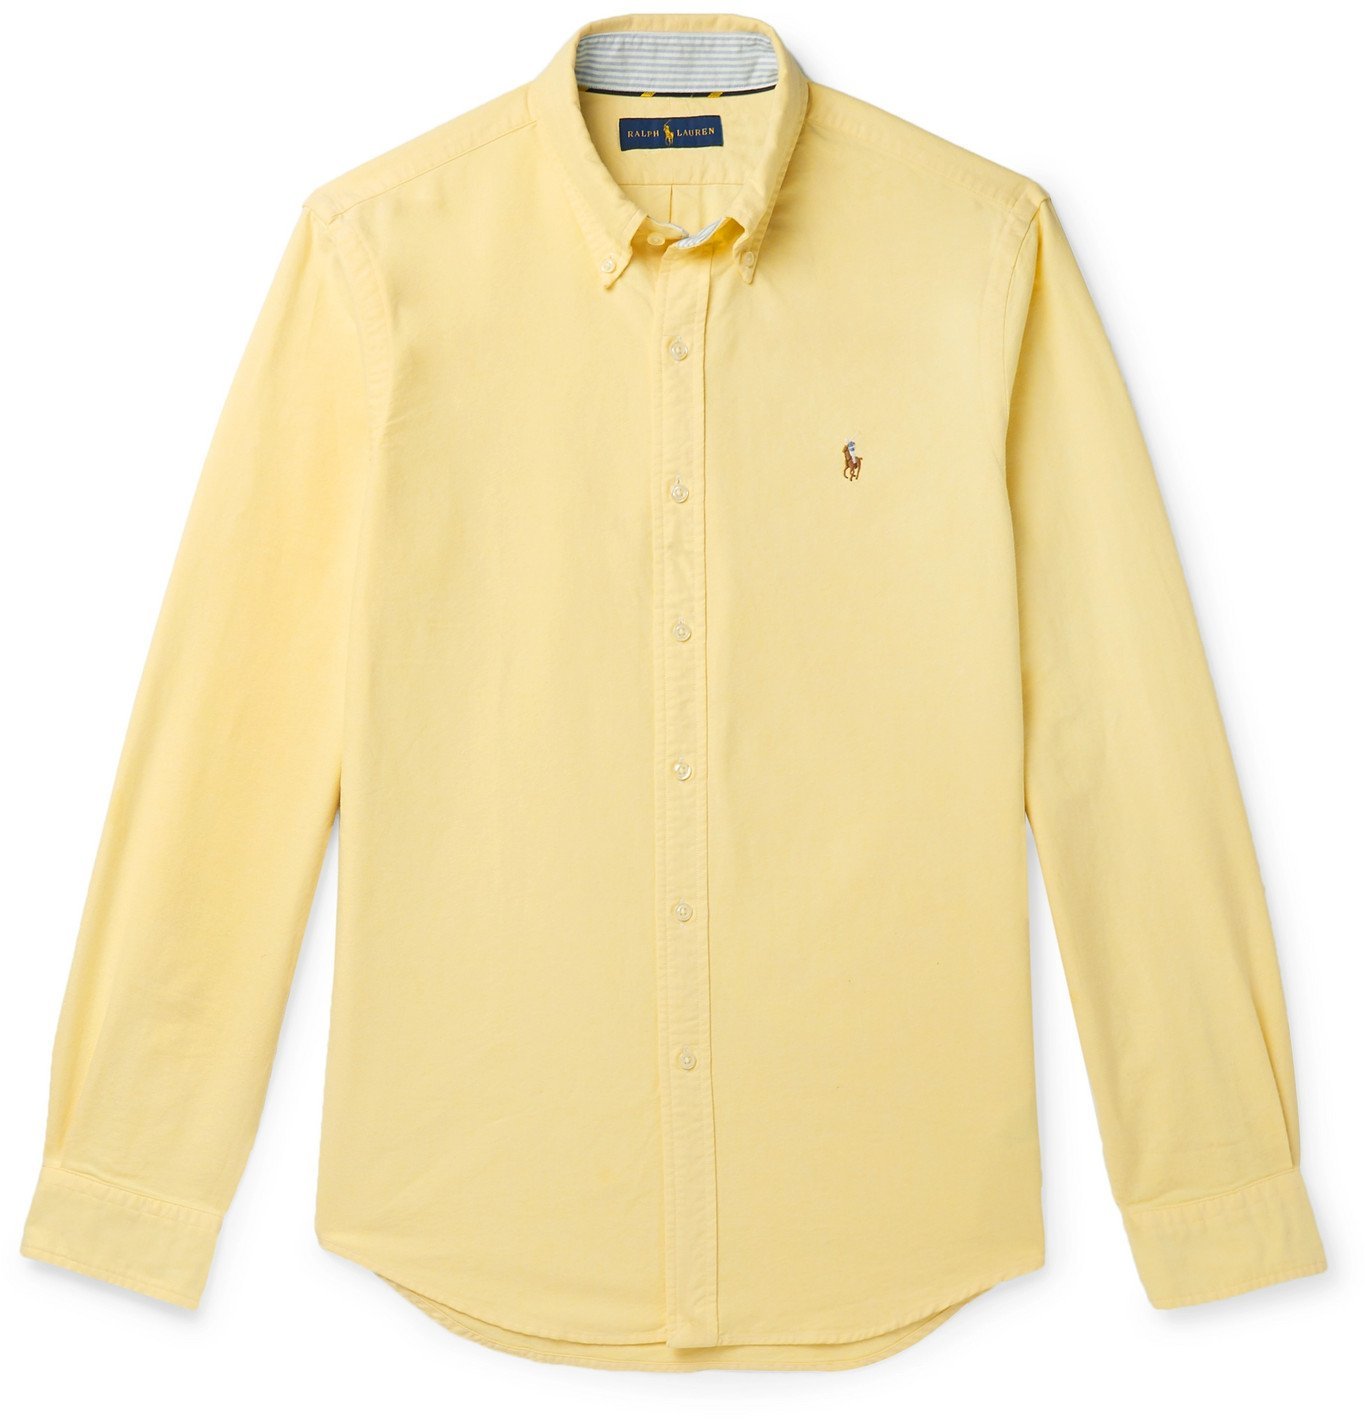 ralph lauren yellow oxford shirt